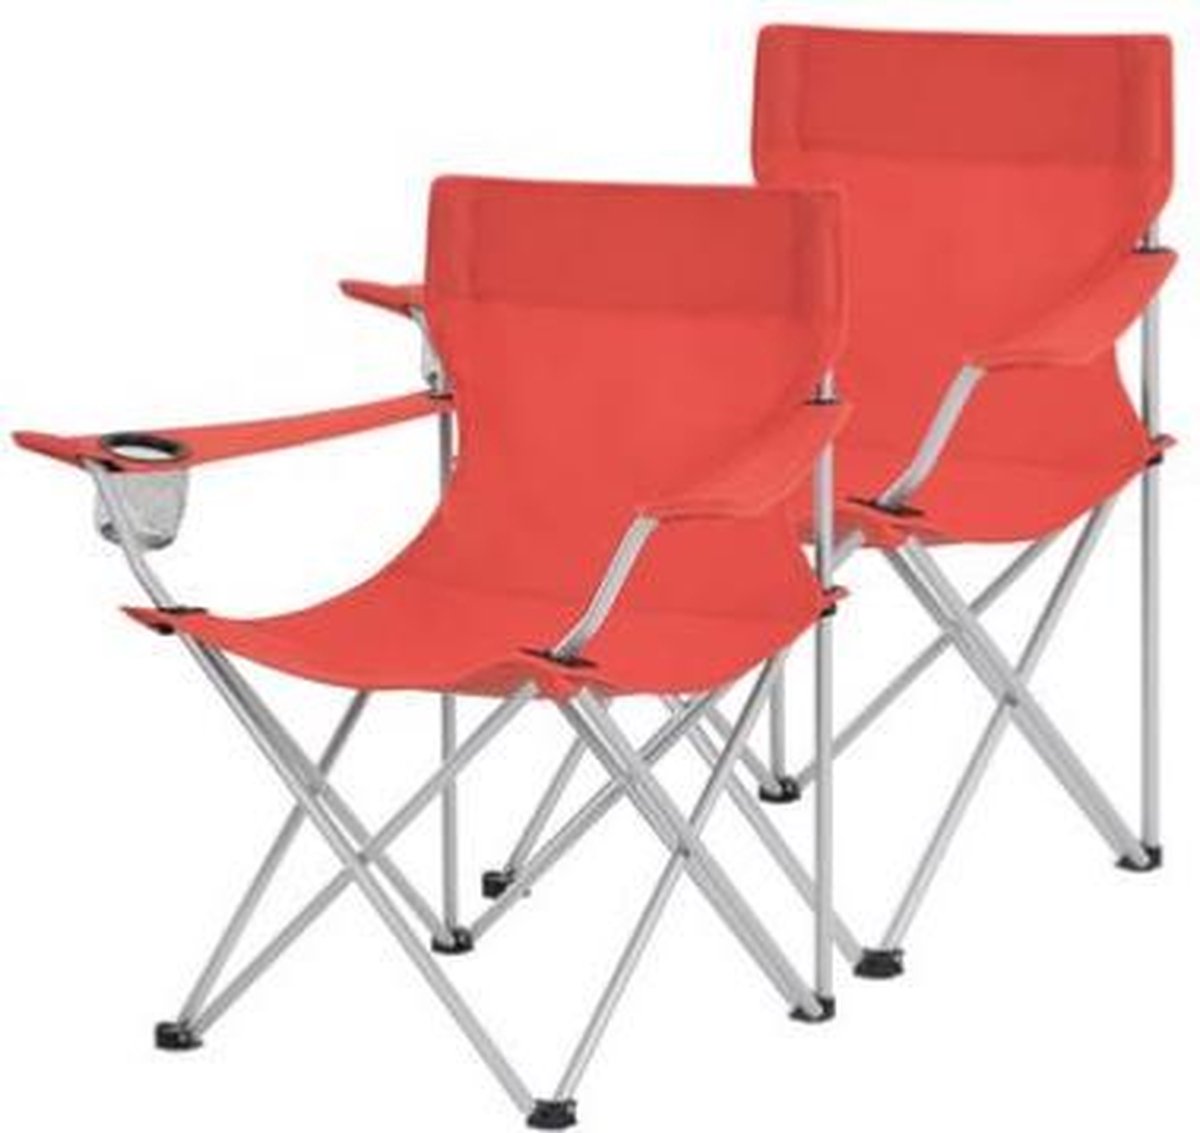 Segenn's Campingstoelen tot 120 kg - set van 2 - Opklapbare tuinstoelen - Campingstoelen - Opklapbare stoelen - Buitenstoelen met armleuningen en bekerhouders, stabiel frame, belastbaar tot 120 kg - Rood